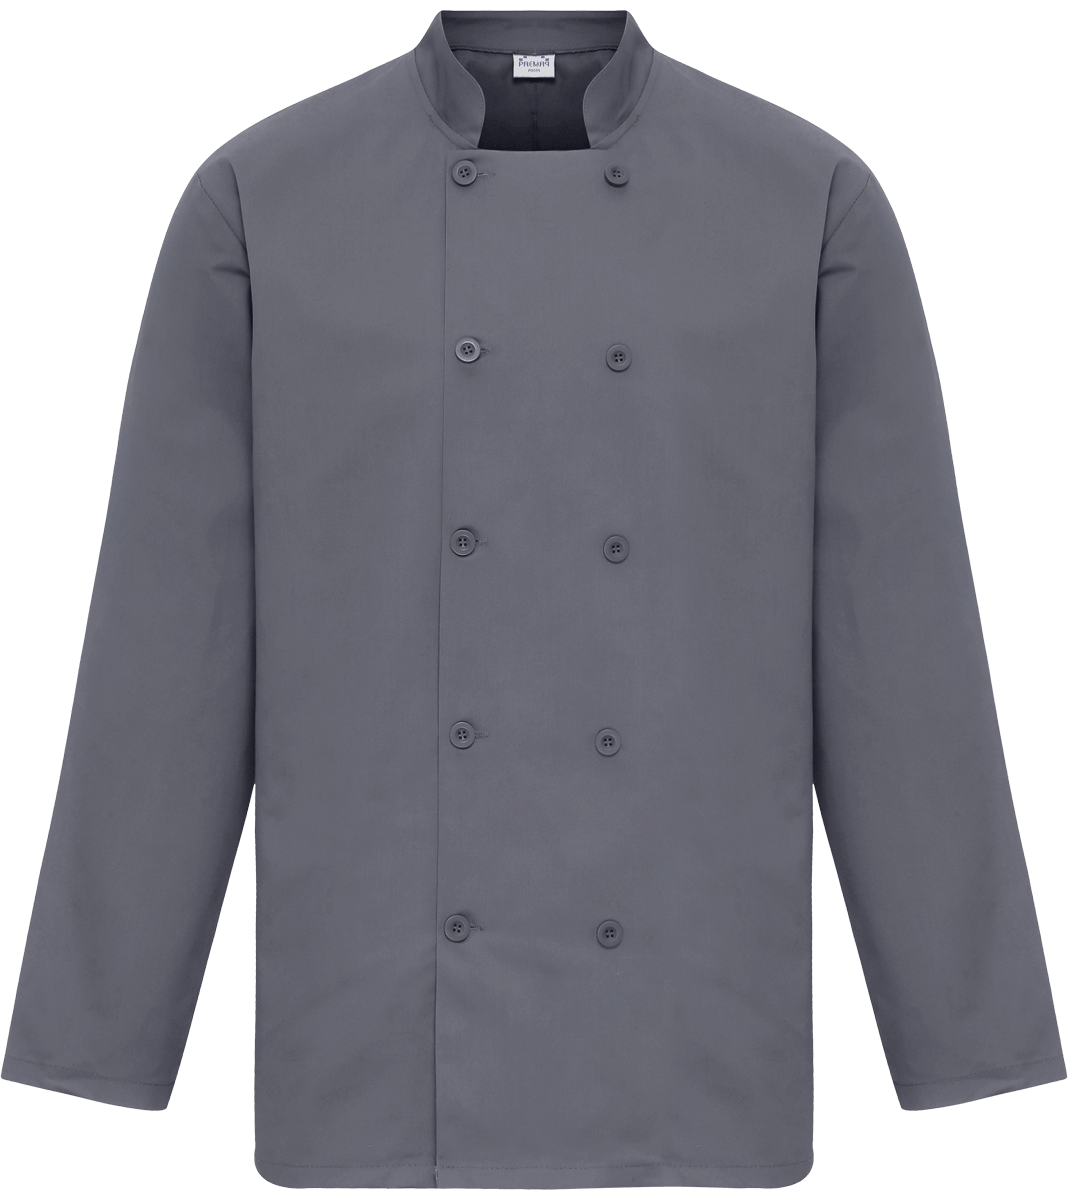 Customize Your Kitchen Jacket On Tunetoo Steel